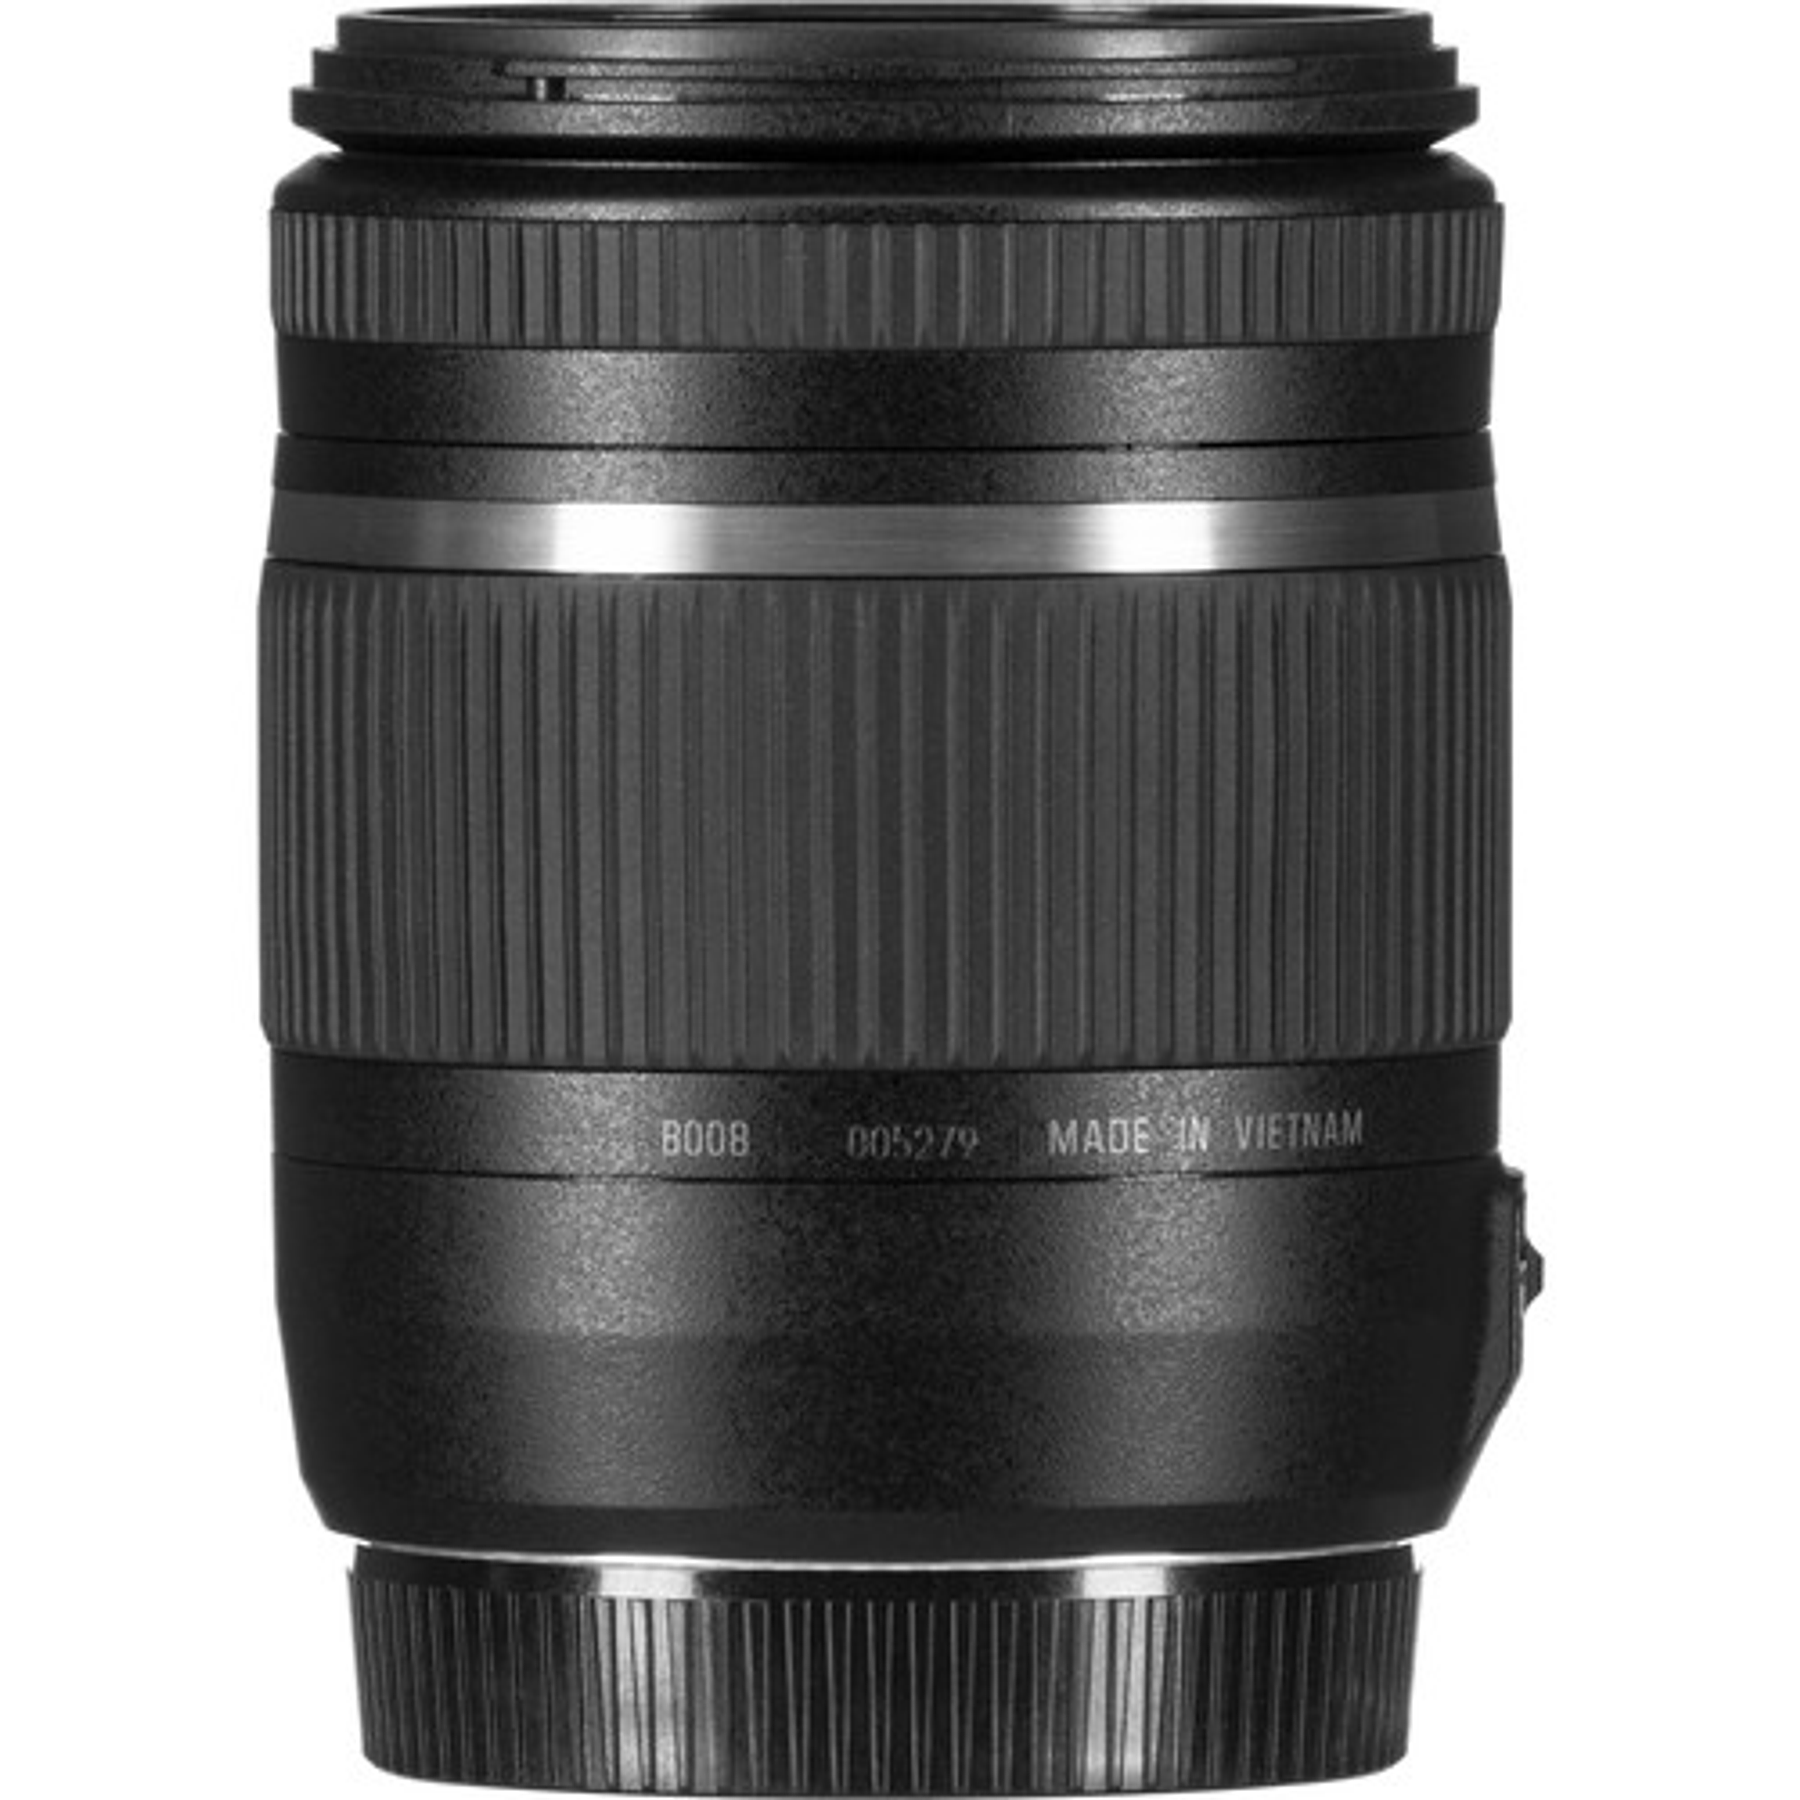 Tamron Lente 18-270mm F/3.5-6.3 para Canon/Nikon